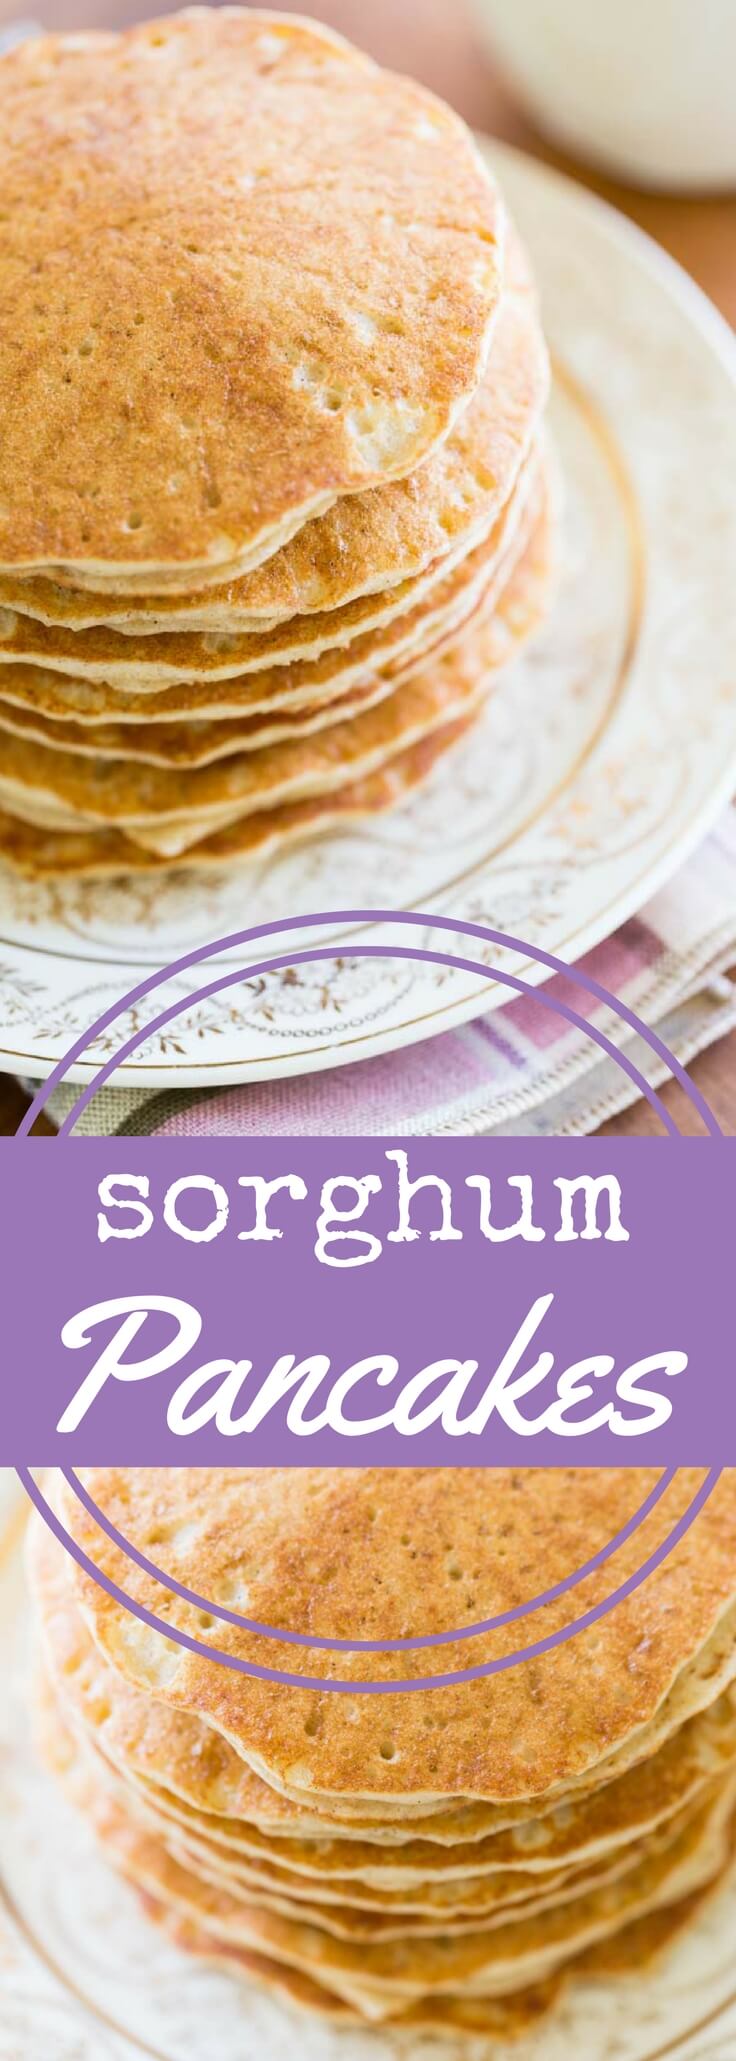 Sorghum Pancakes (Gluten Free)